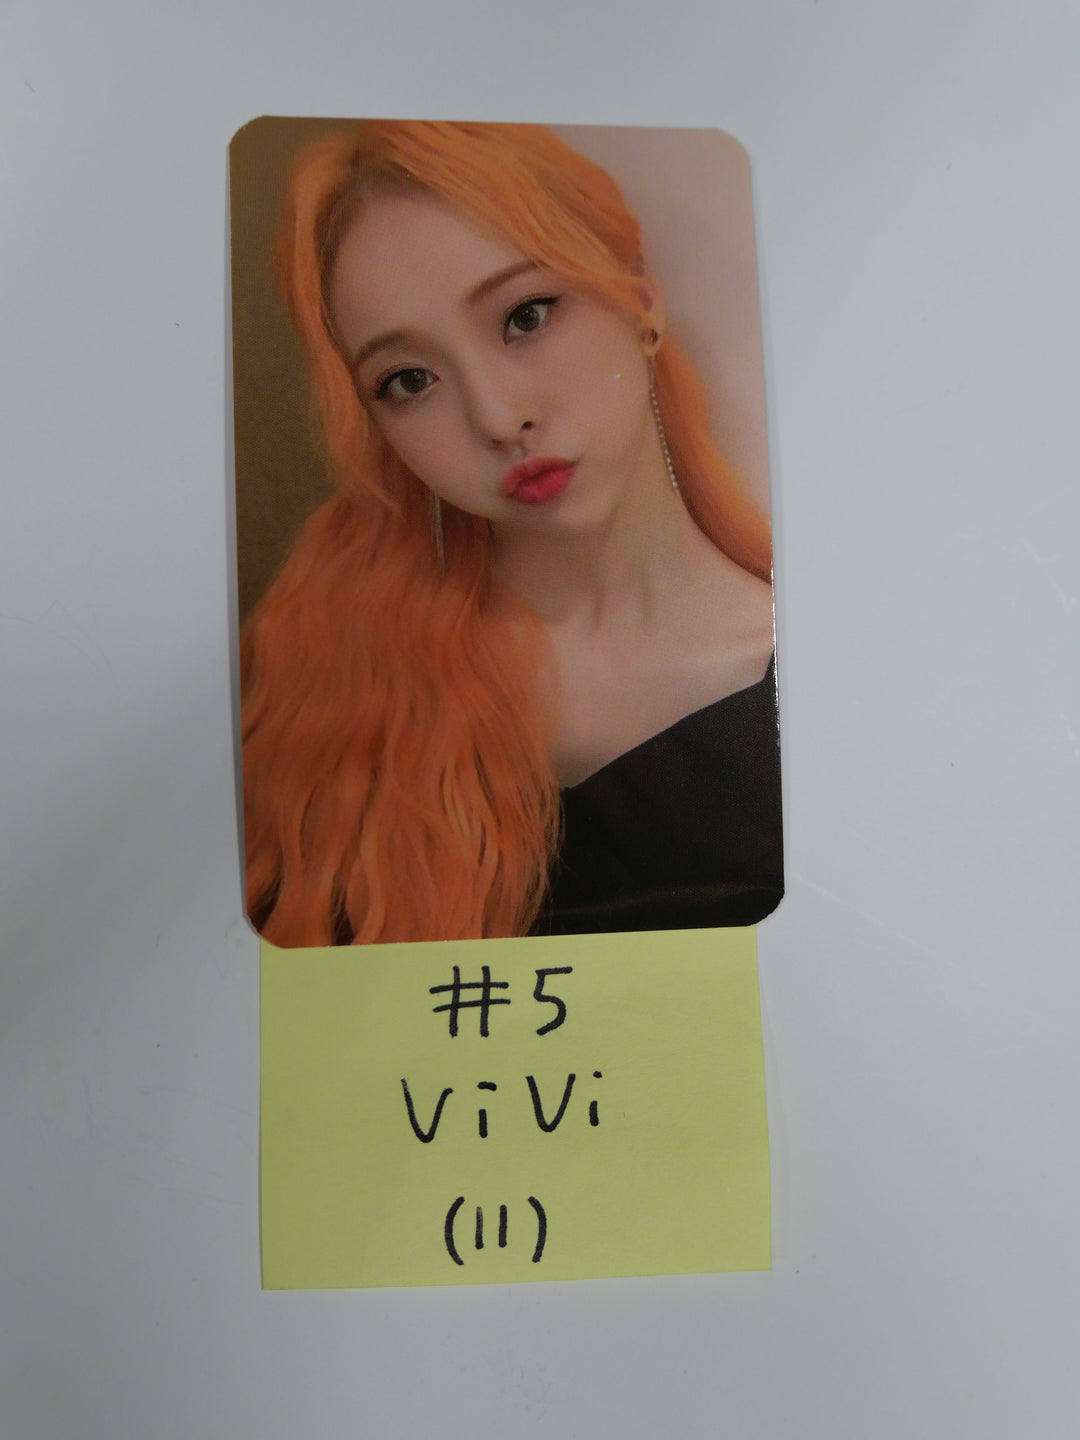 이달의 소녀 12:00 - 공식 포토카드 - Vivi